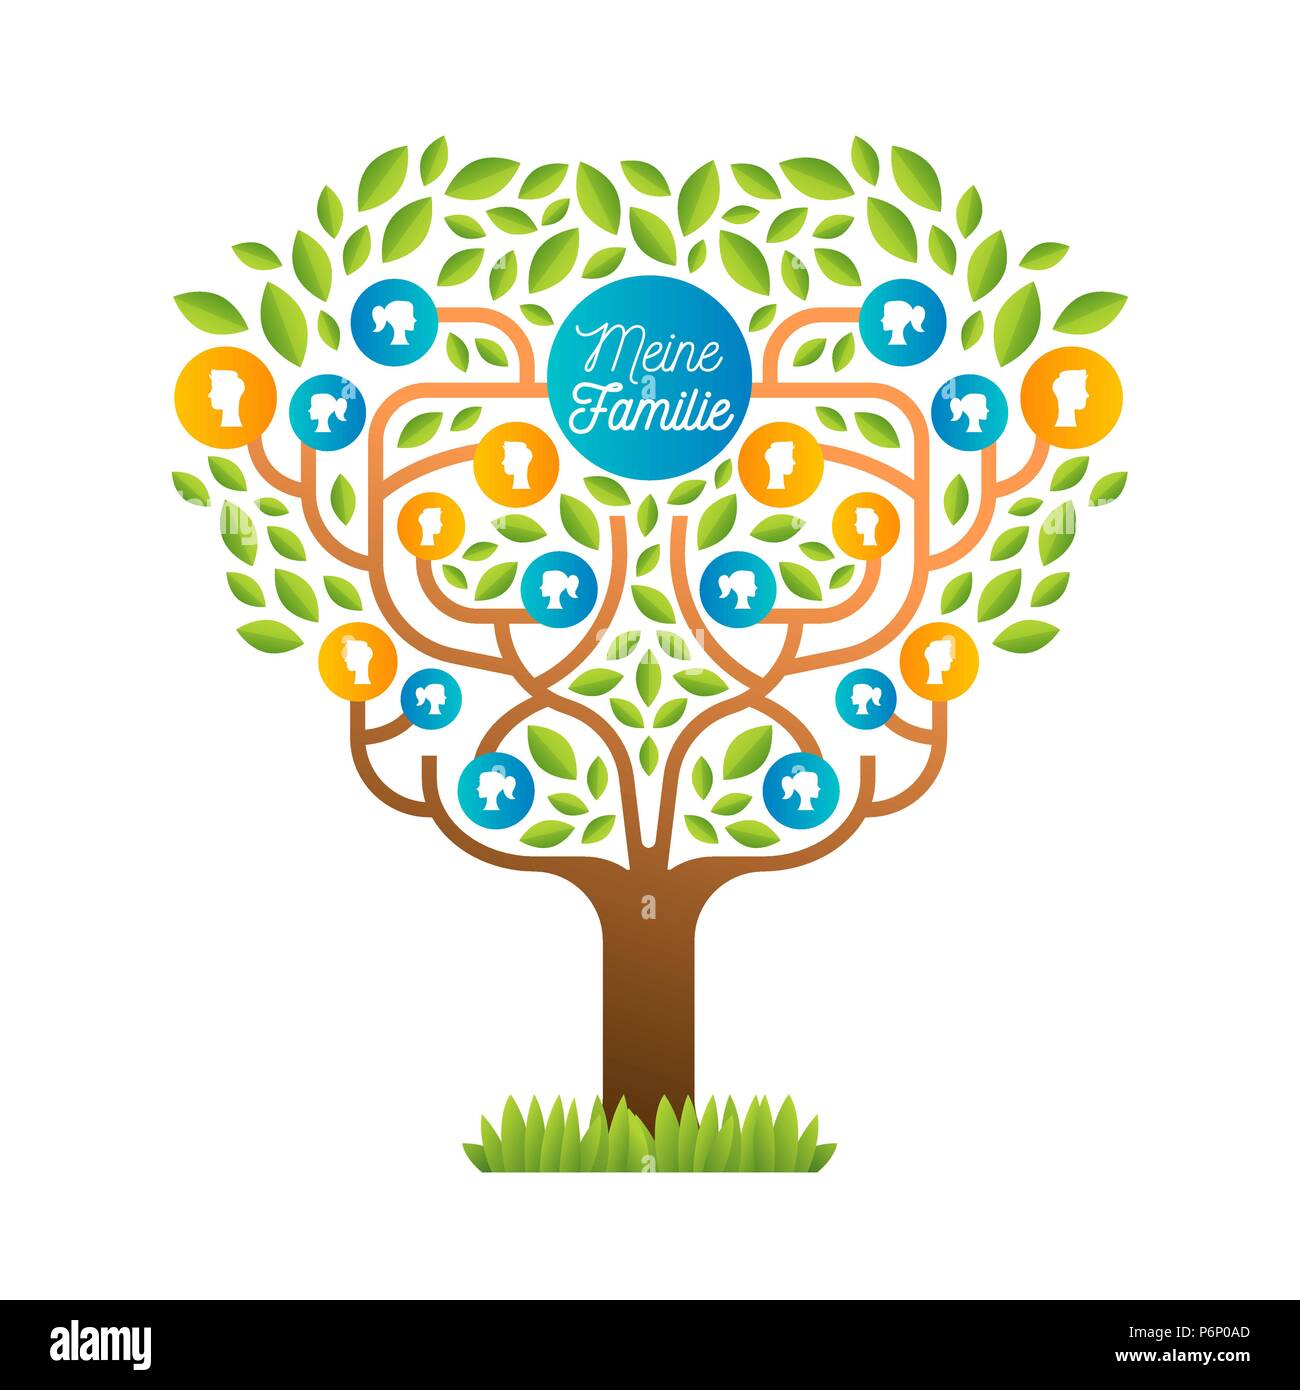 Big Family Tree template in lingua tedesca, illustrazione concetto con persone icone colorate e foglie verdi per generazioni di vita la storia. EPS10 vect Illustrazione Vettoriale